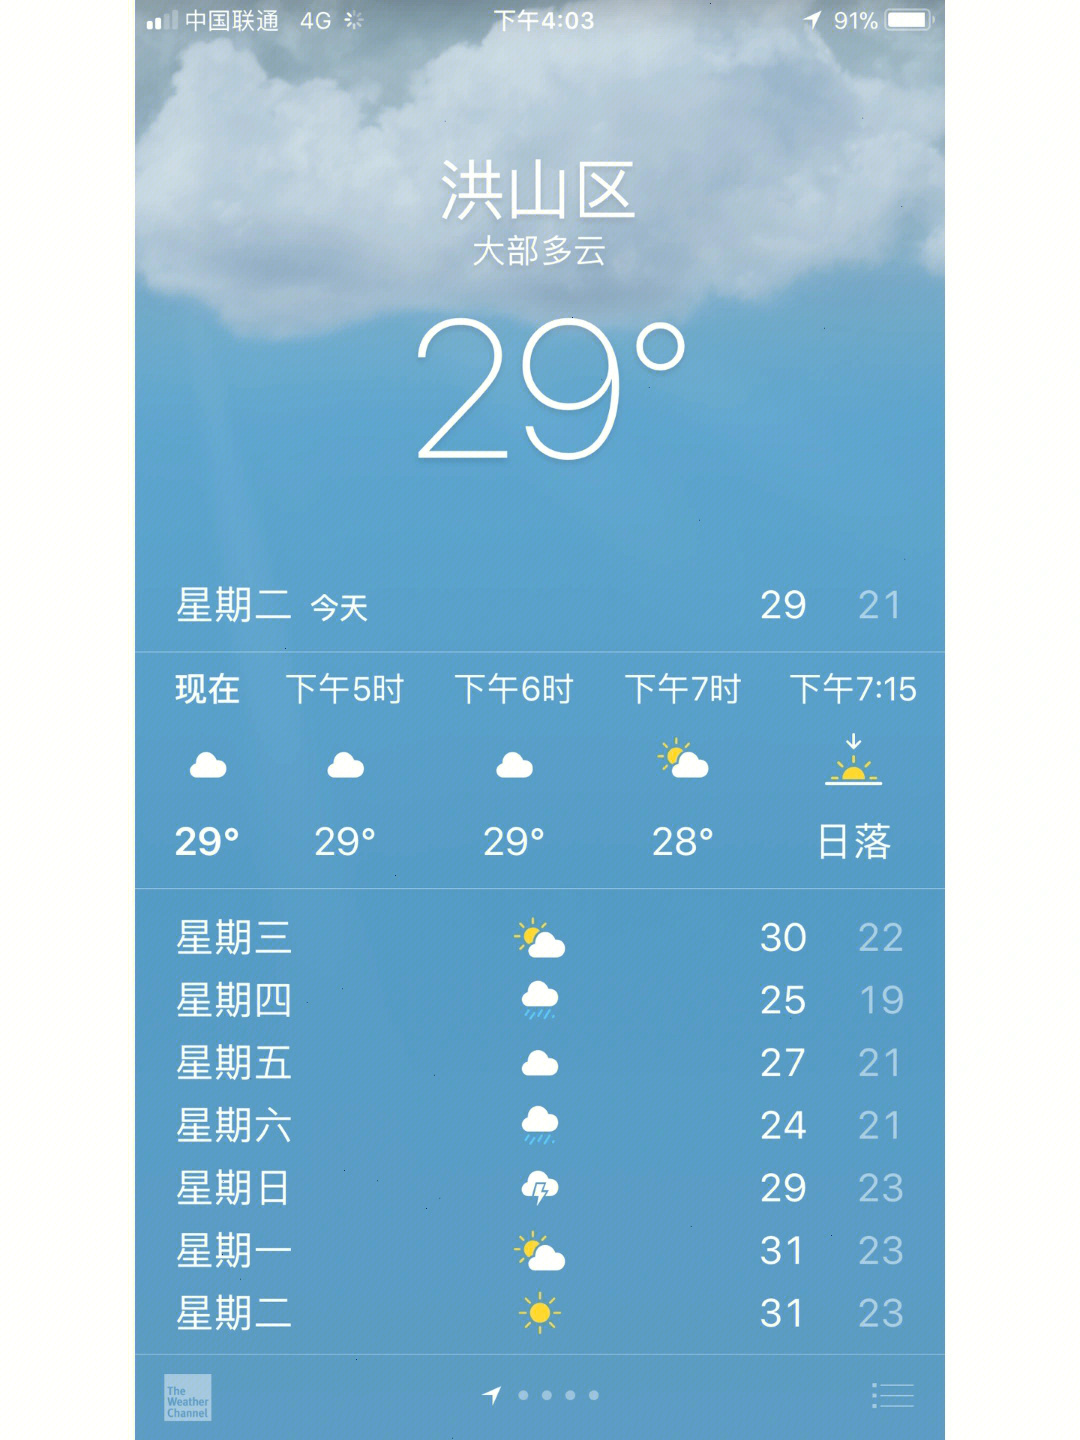 武汉天气表情包图片